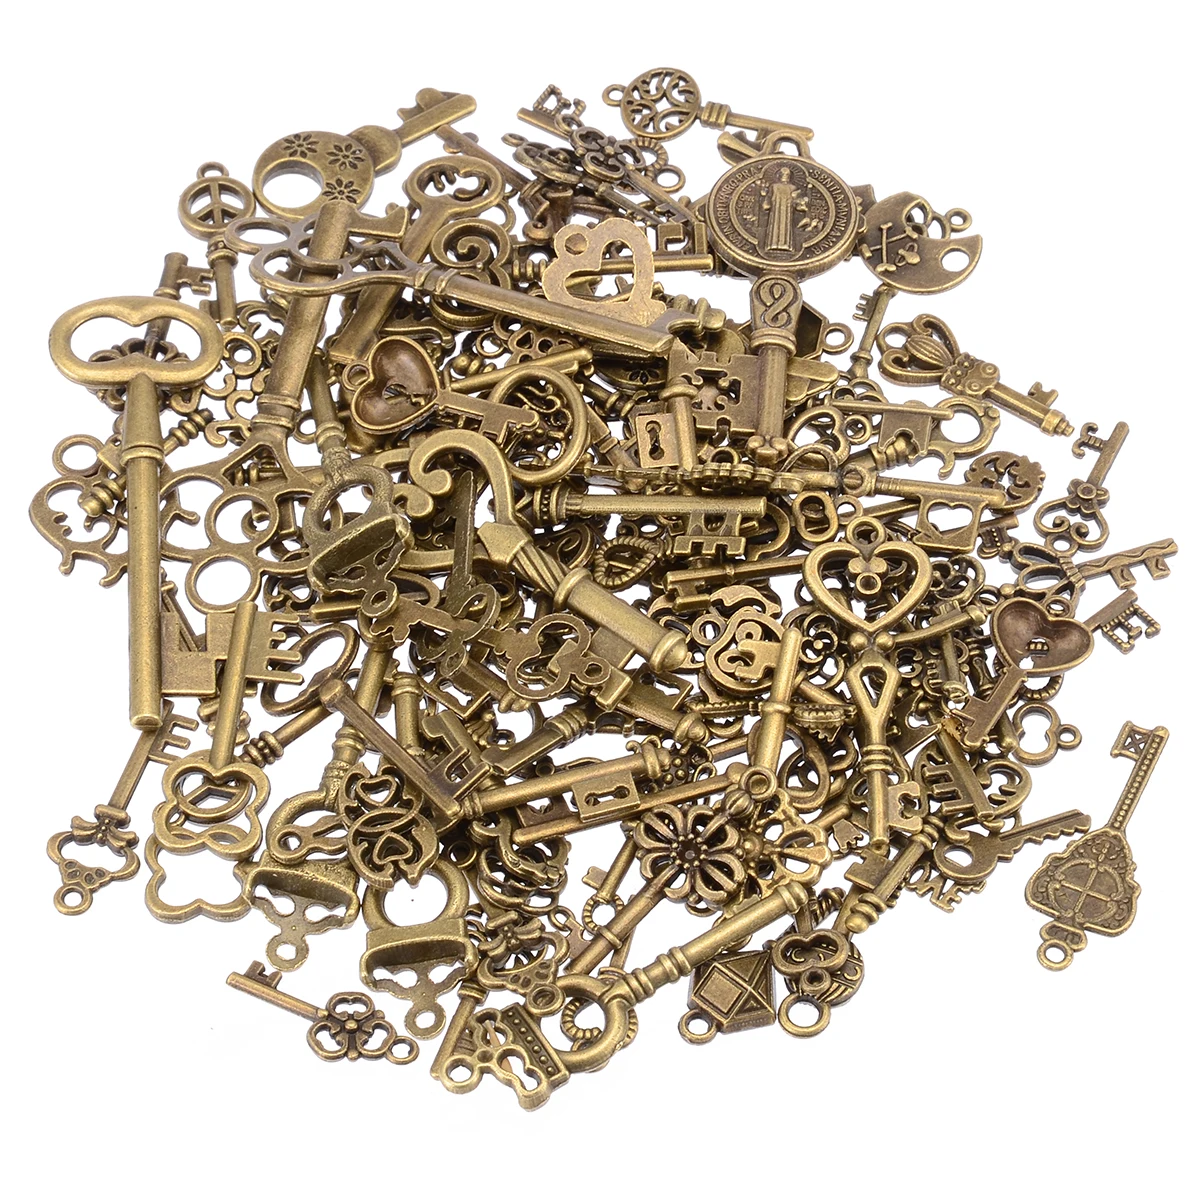 

125pcs/set Vintage Keys Charms Antique Bronze Skeleton Keys Pendant Necklace Hanging Decor Old Look DIY Jewelry Making Craft